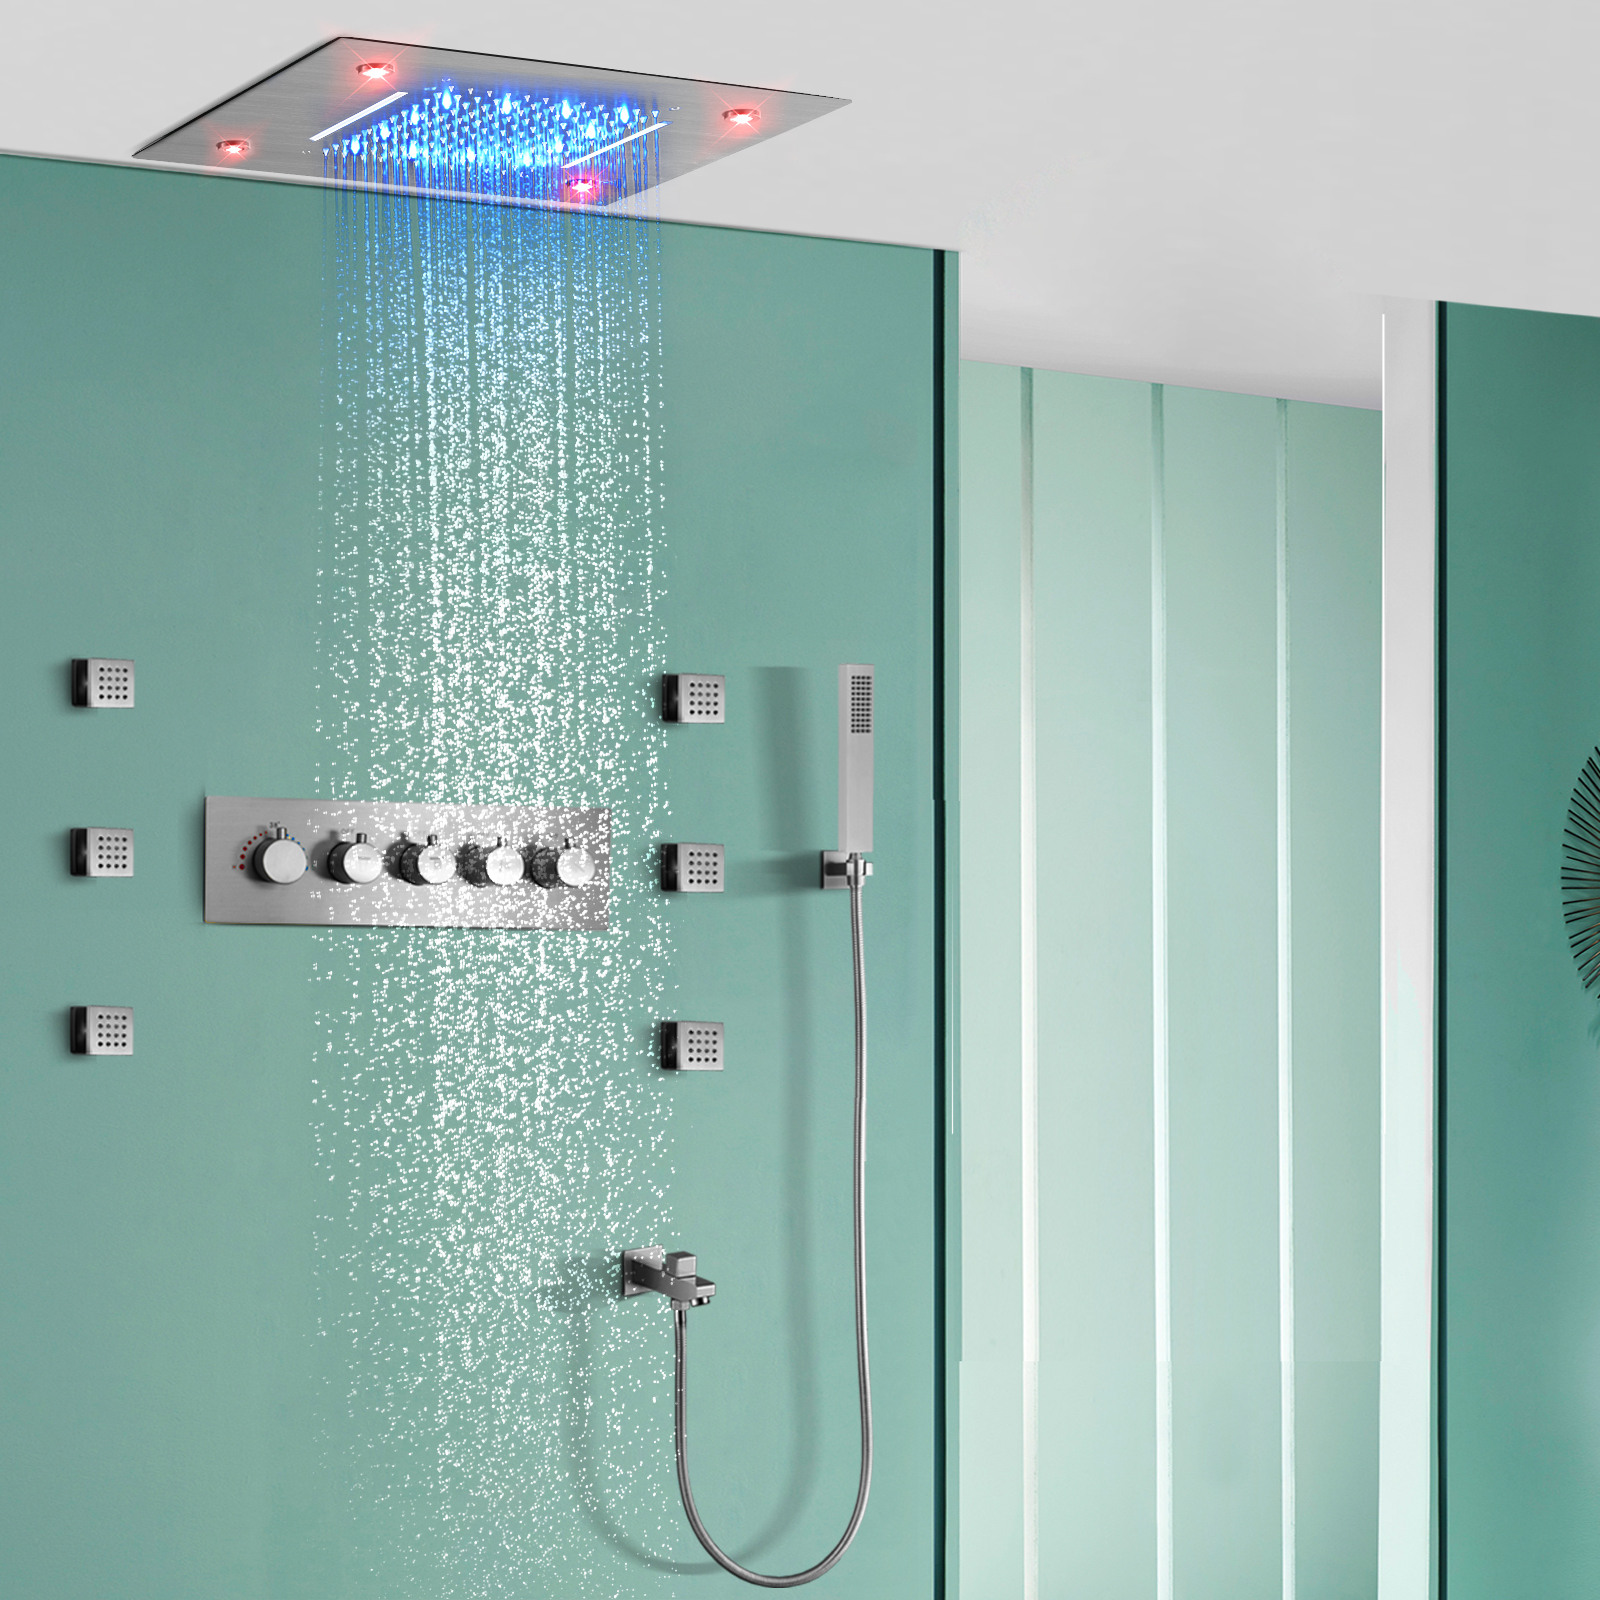 نحى درجة حرارة ثابتة المطر شلال الحمام أدوات دش التحكم عن بعد LED أخفى فوهة مخفية غرفة استحمام وتدليك مجموعة